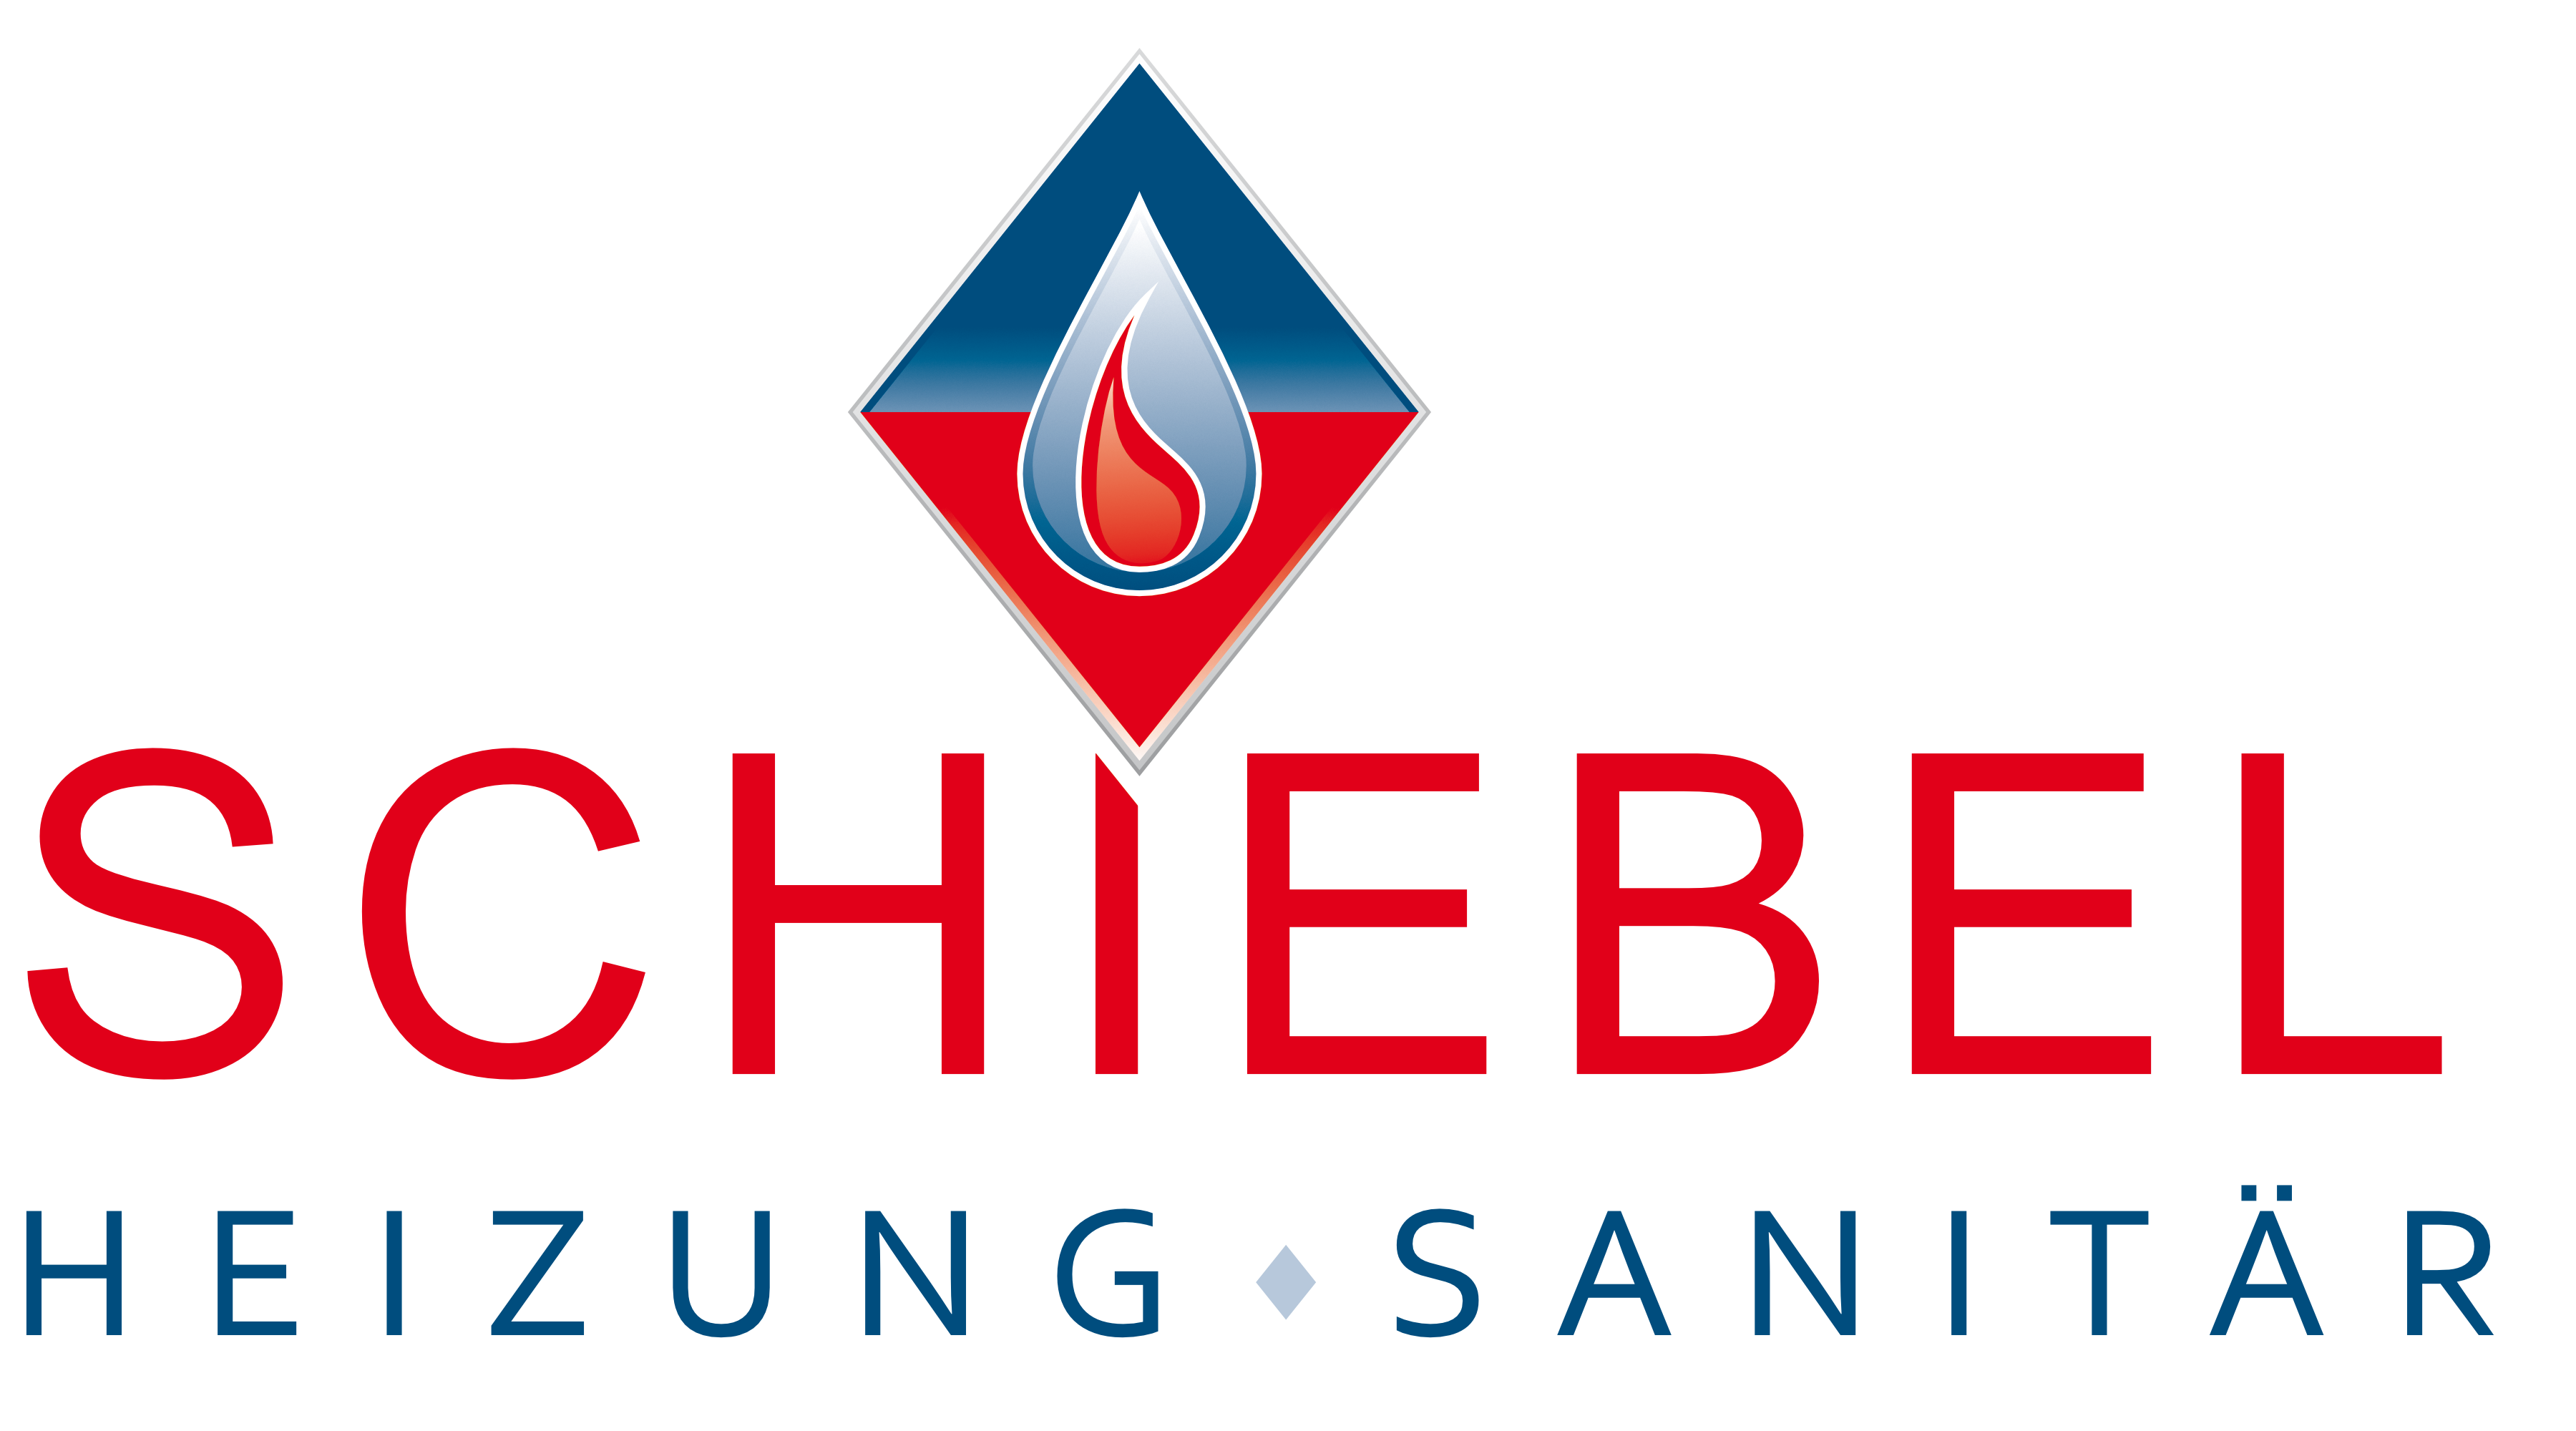 Schiebel Heizung Sanitär -- Logo